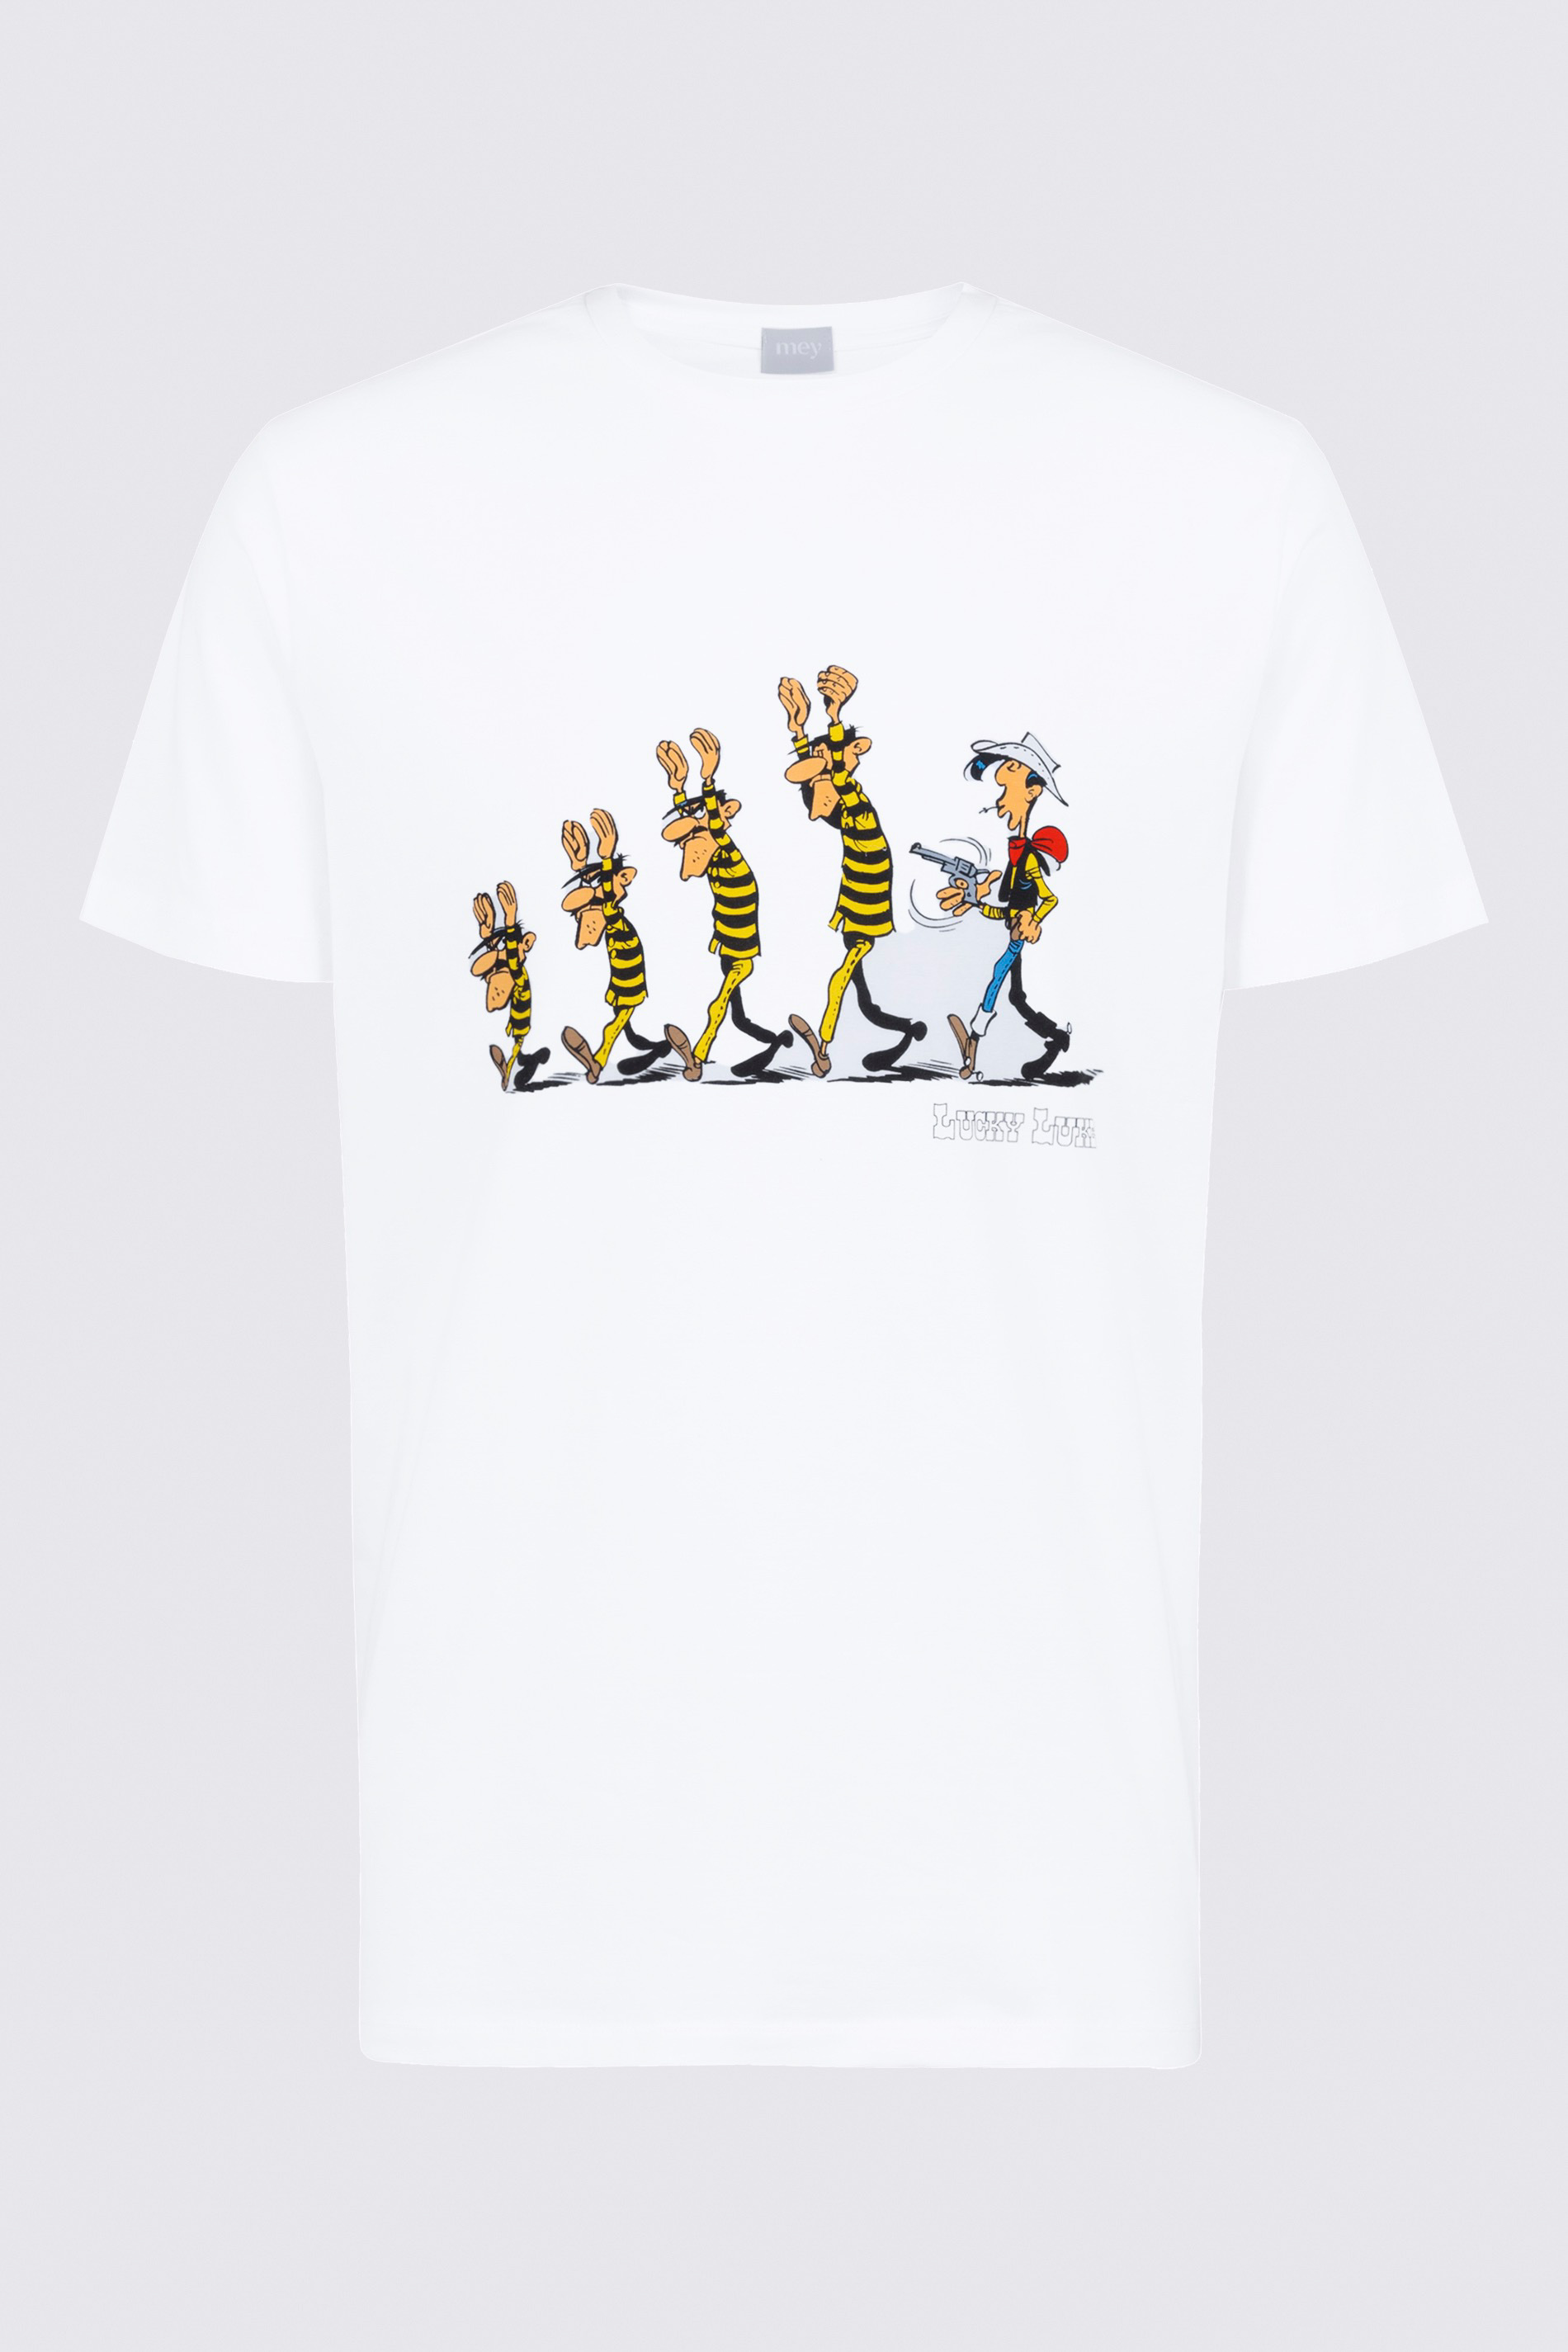 T-shirt Serie mey x Lucky Luke Uitknippen | mey®